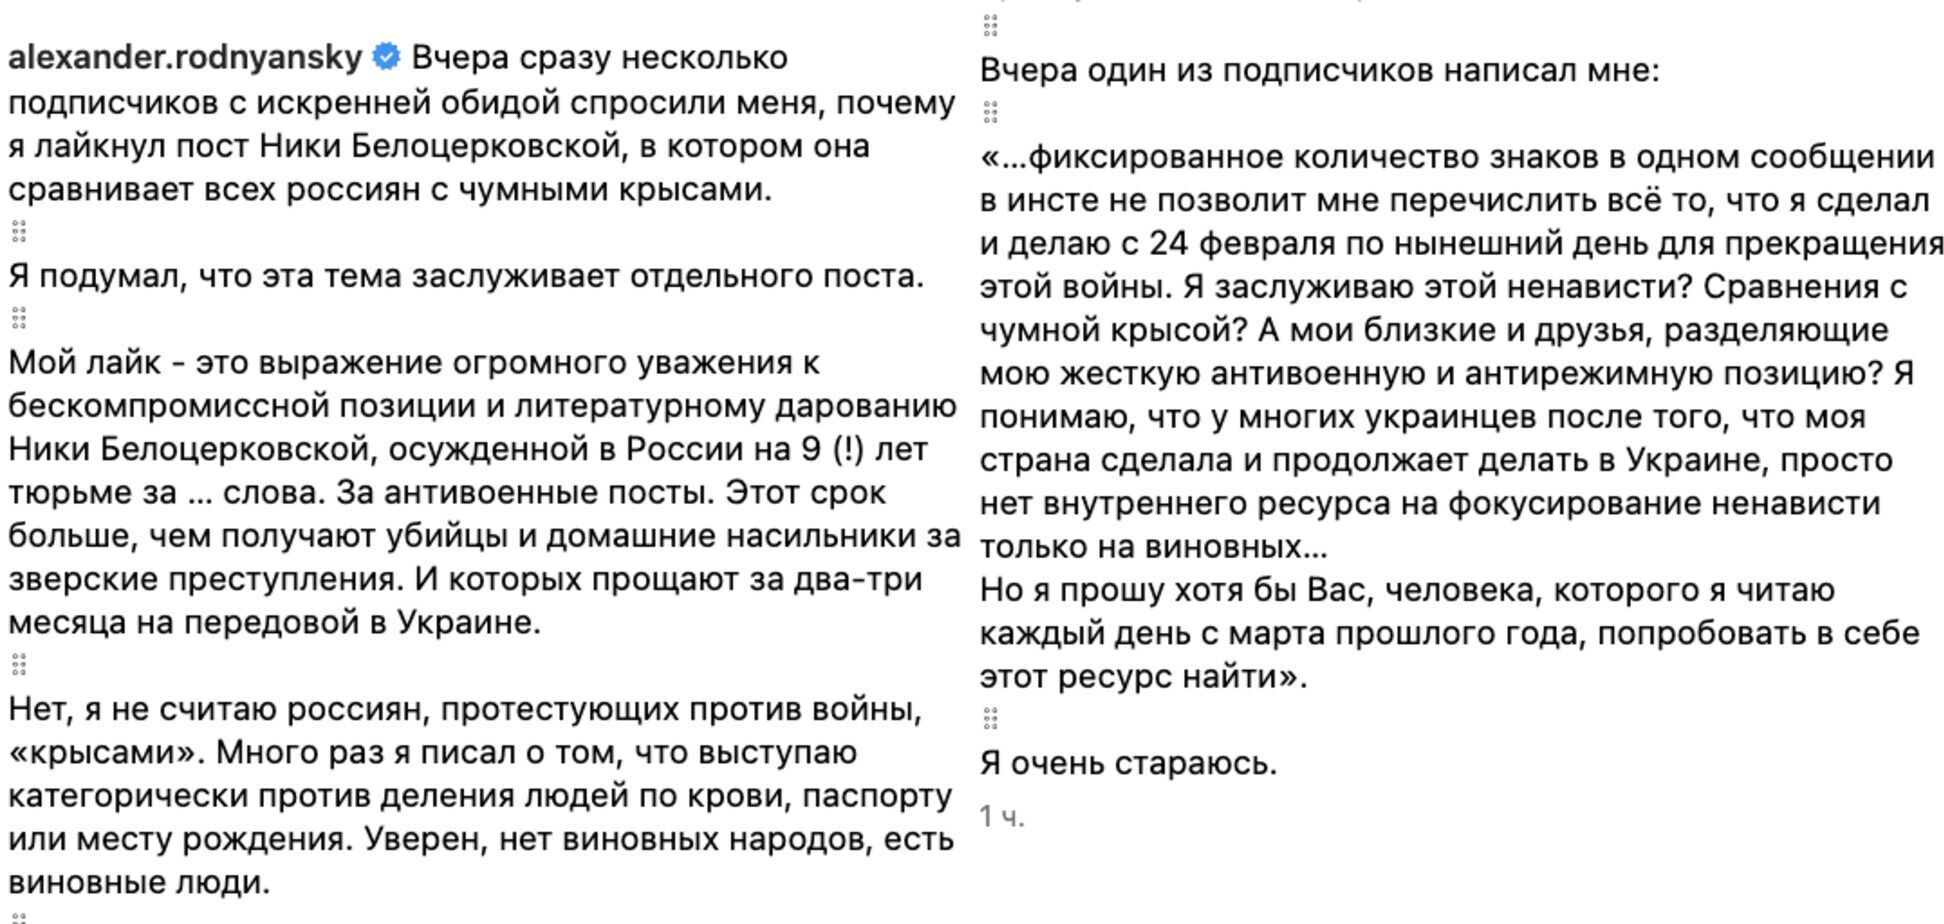 Роднянский вступился за Нику Белоцерковскую и других "хороших русских": я не считаю "крысами" тех, кто против войны 